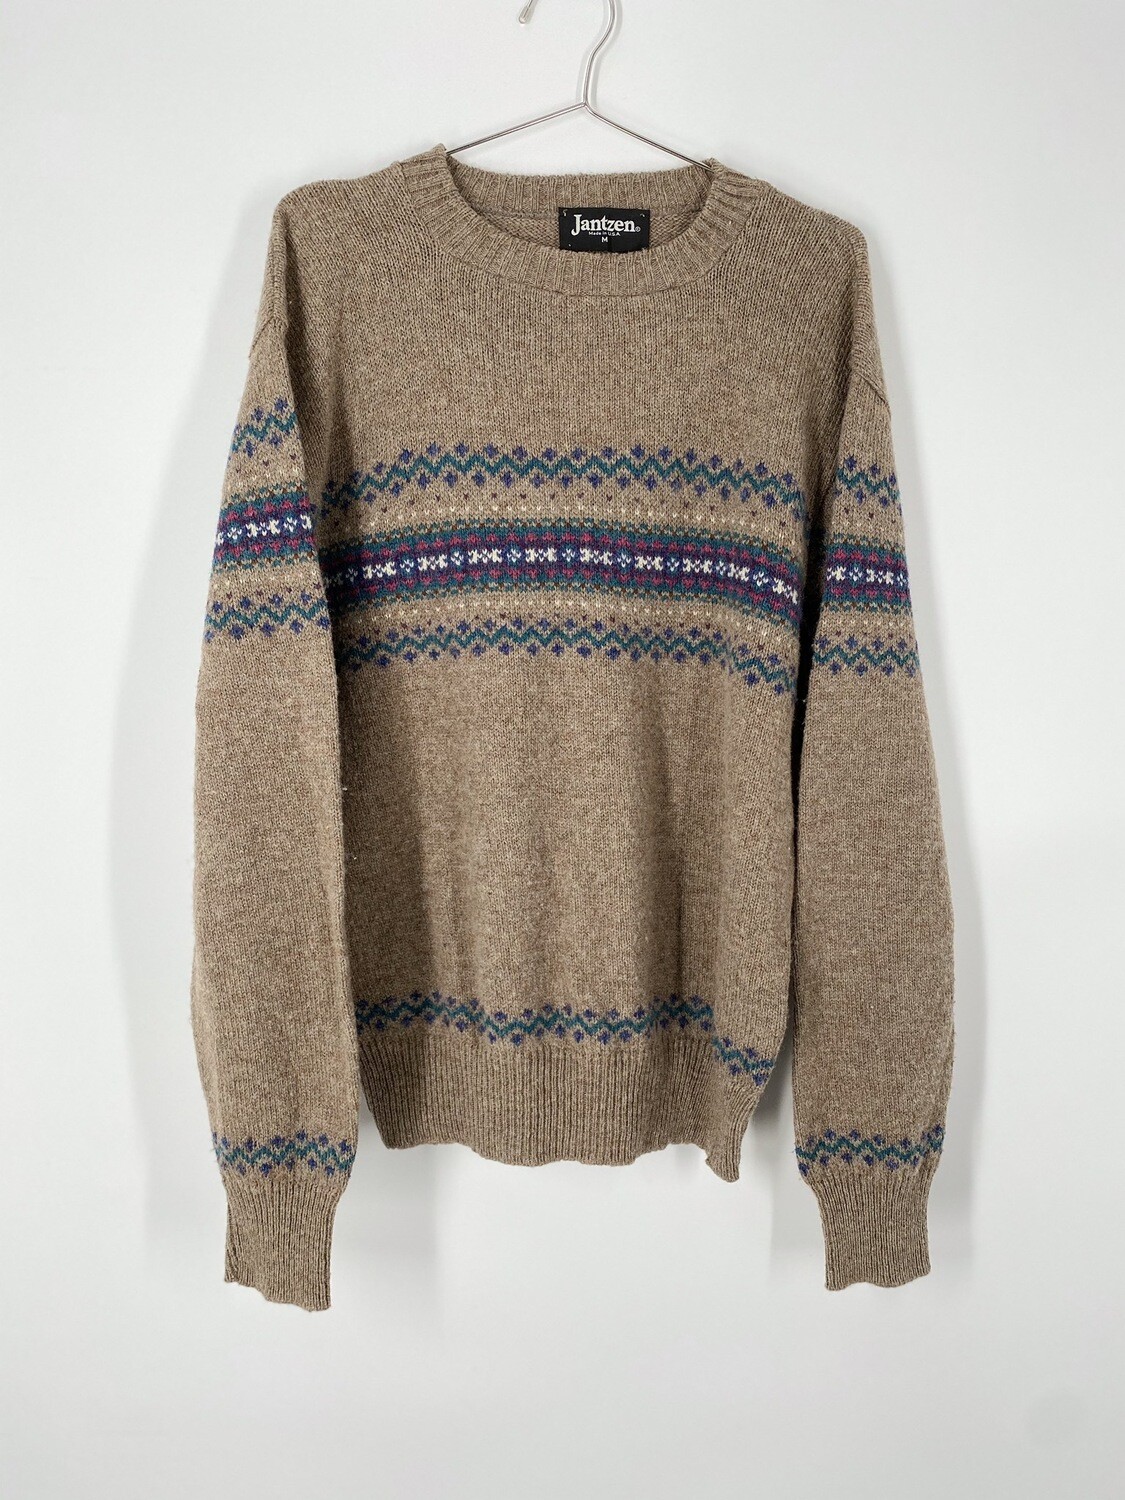 Jantzen Sweater Size Medium